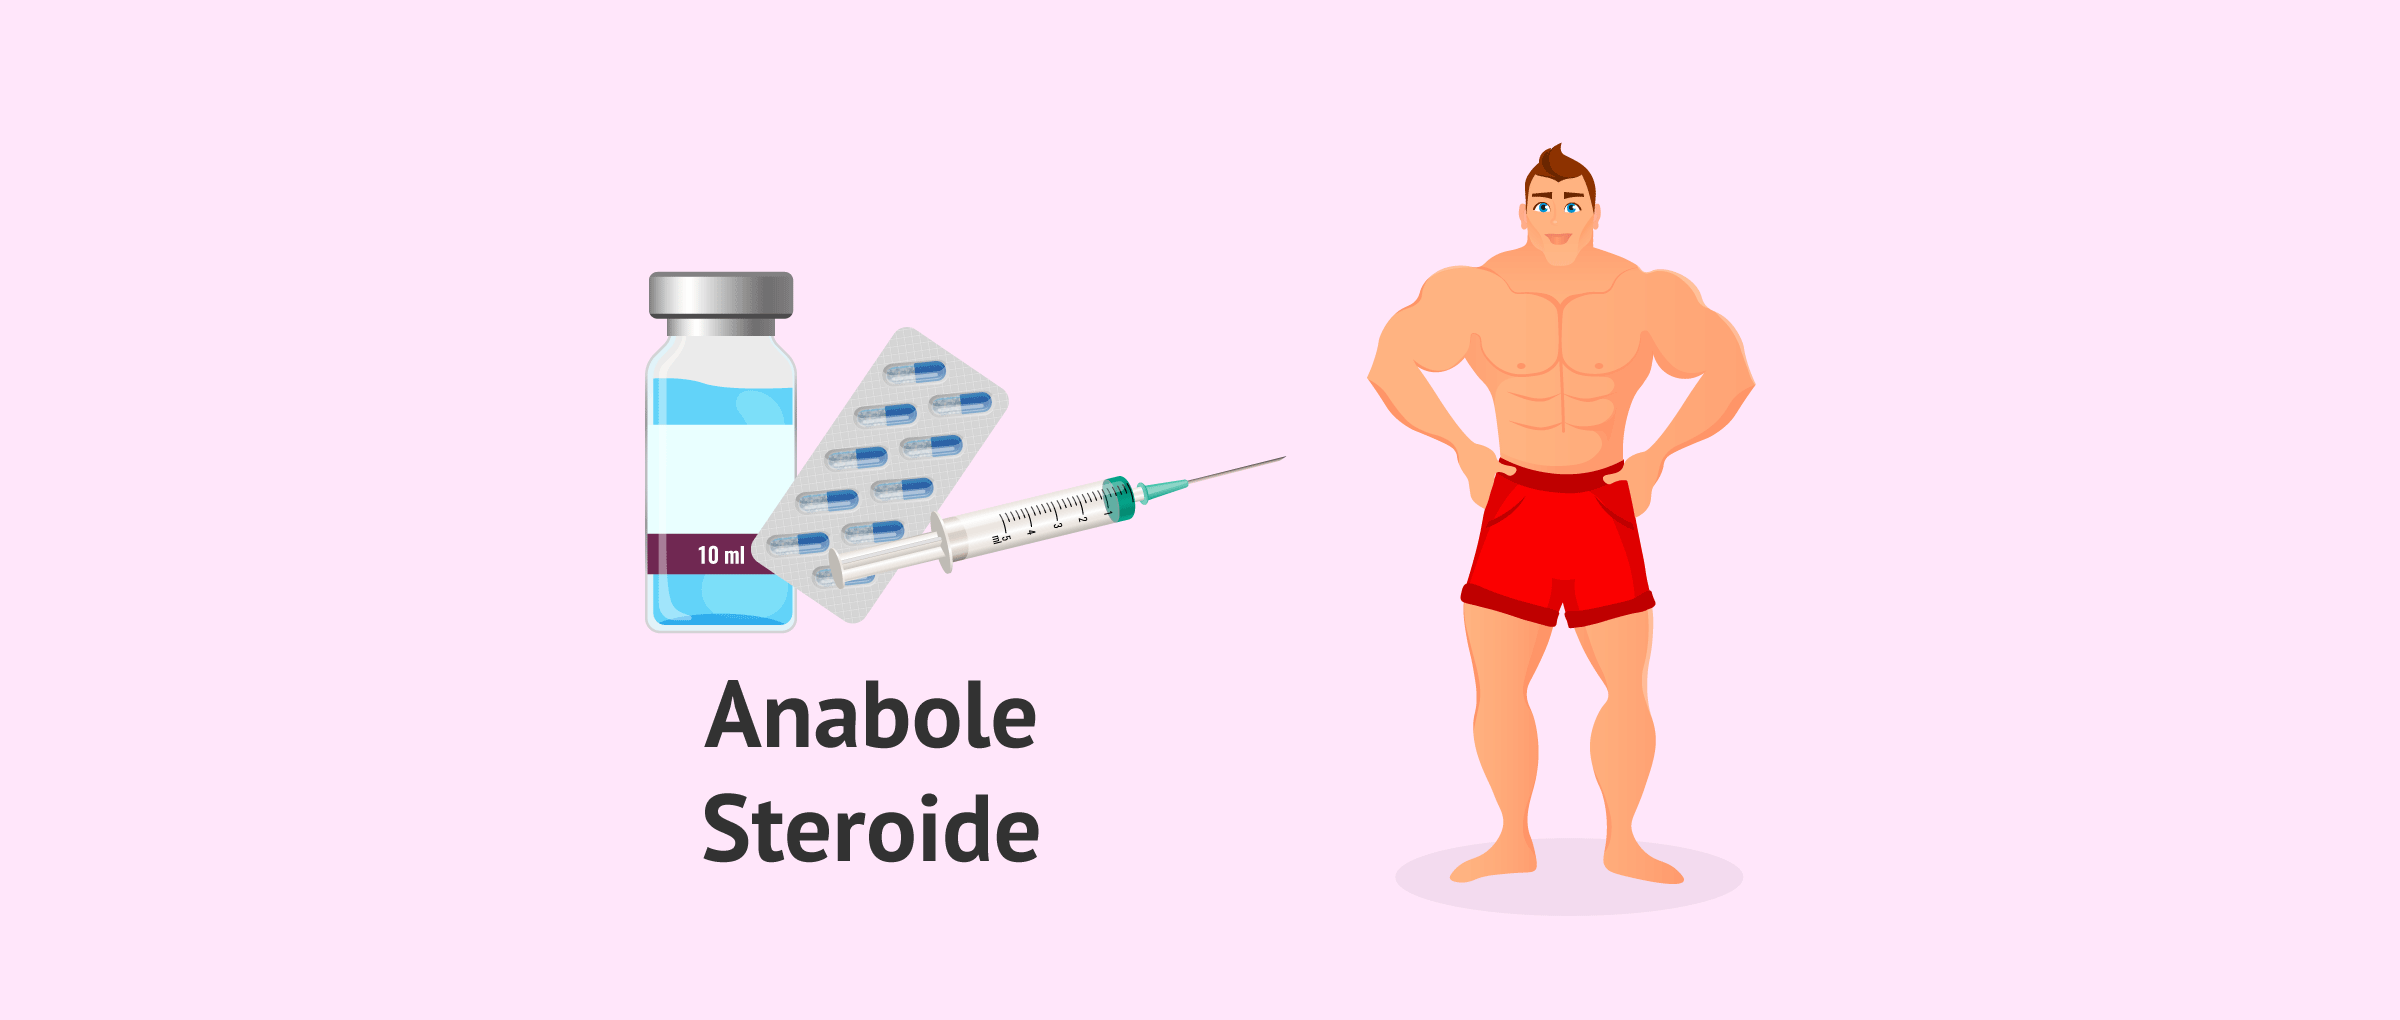 Öffnen Sie die Tore für gonadale steroide mit diesen einfachen Tipps